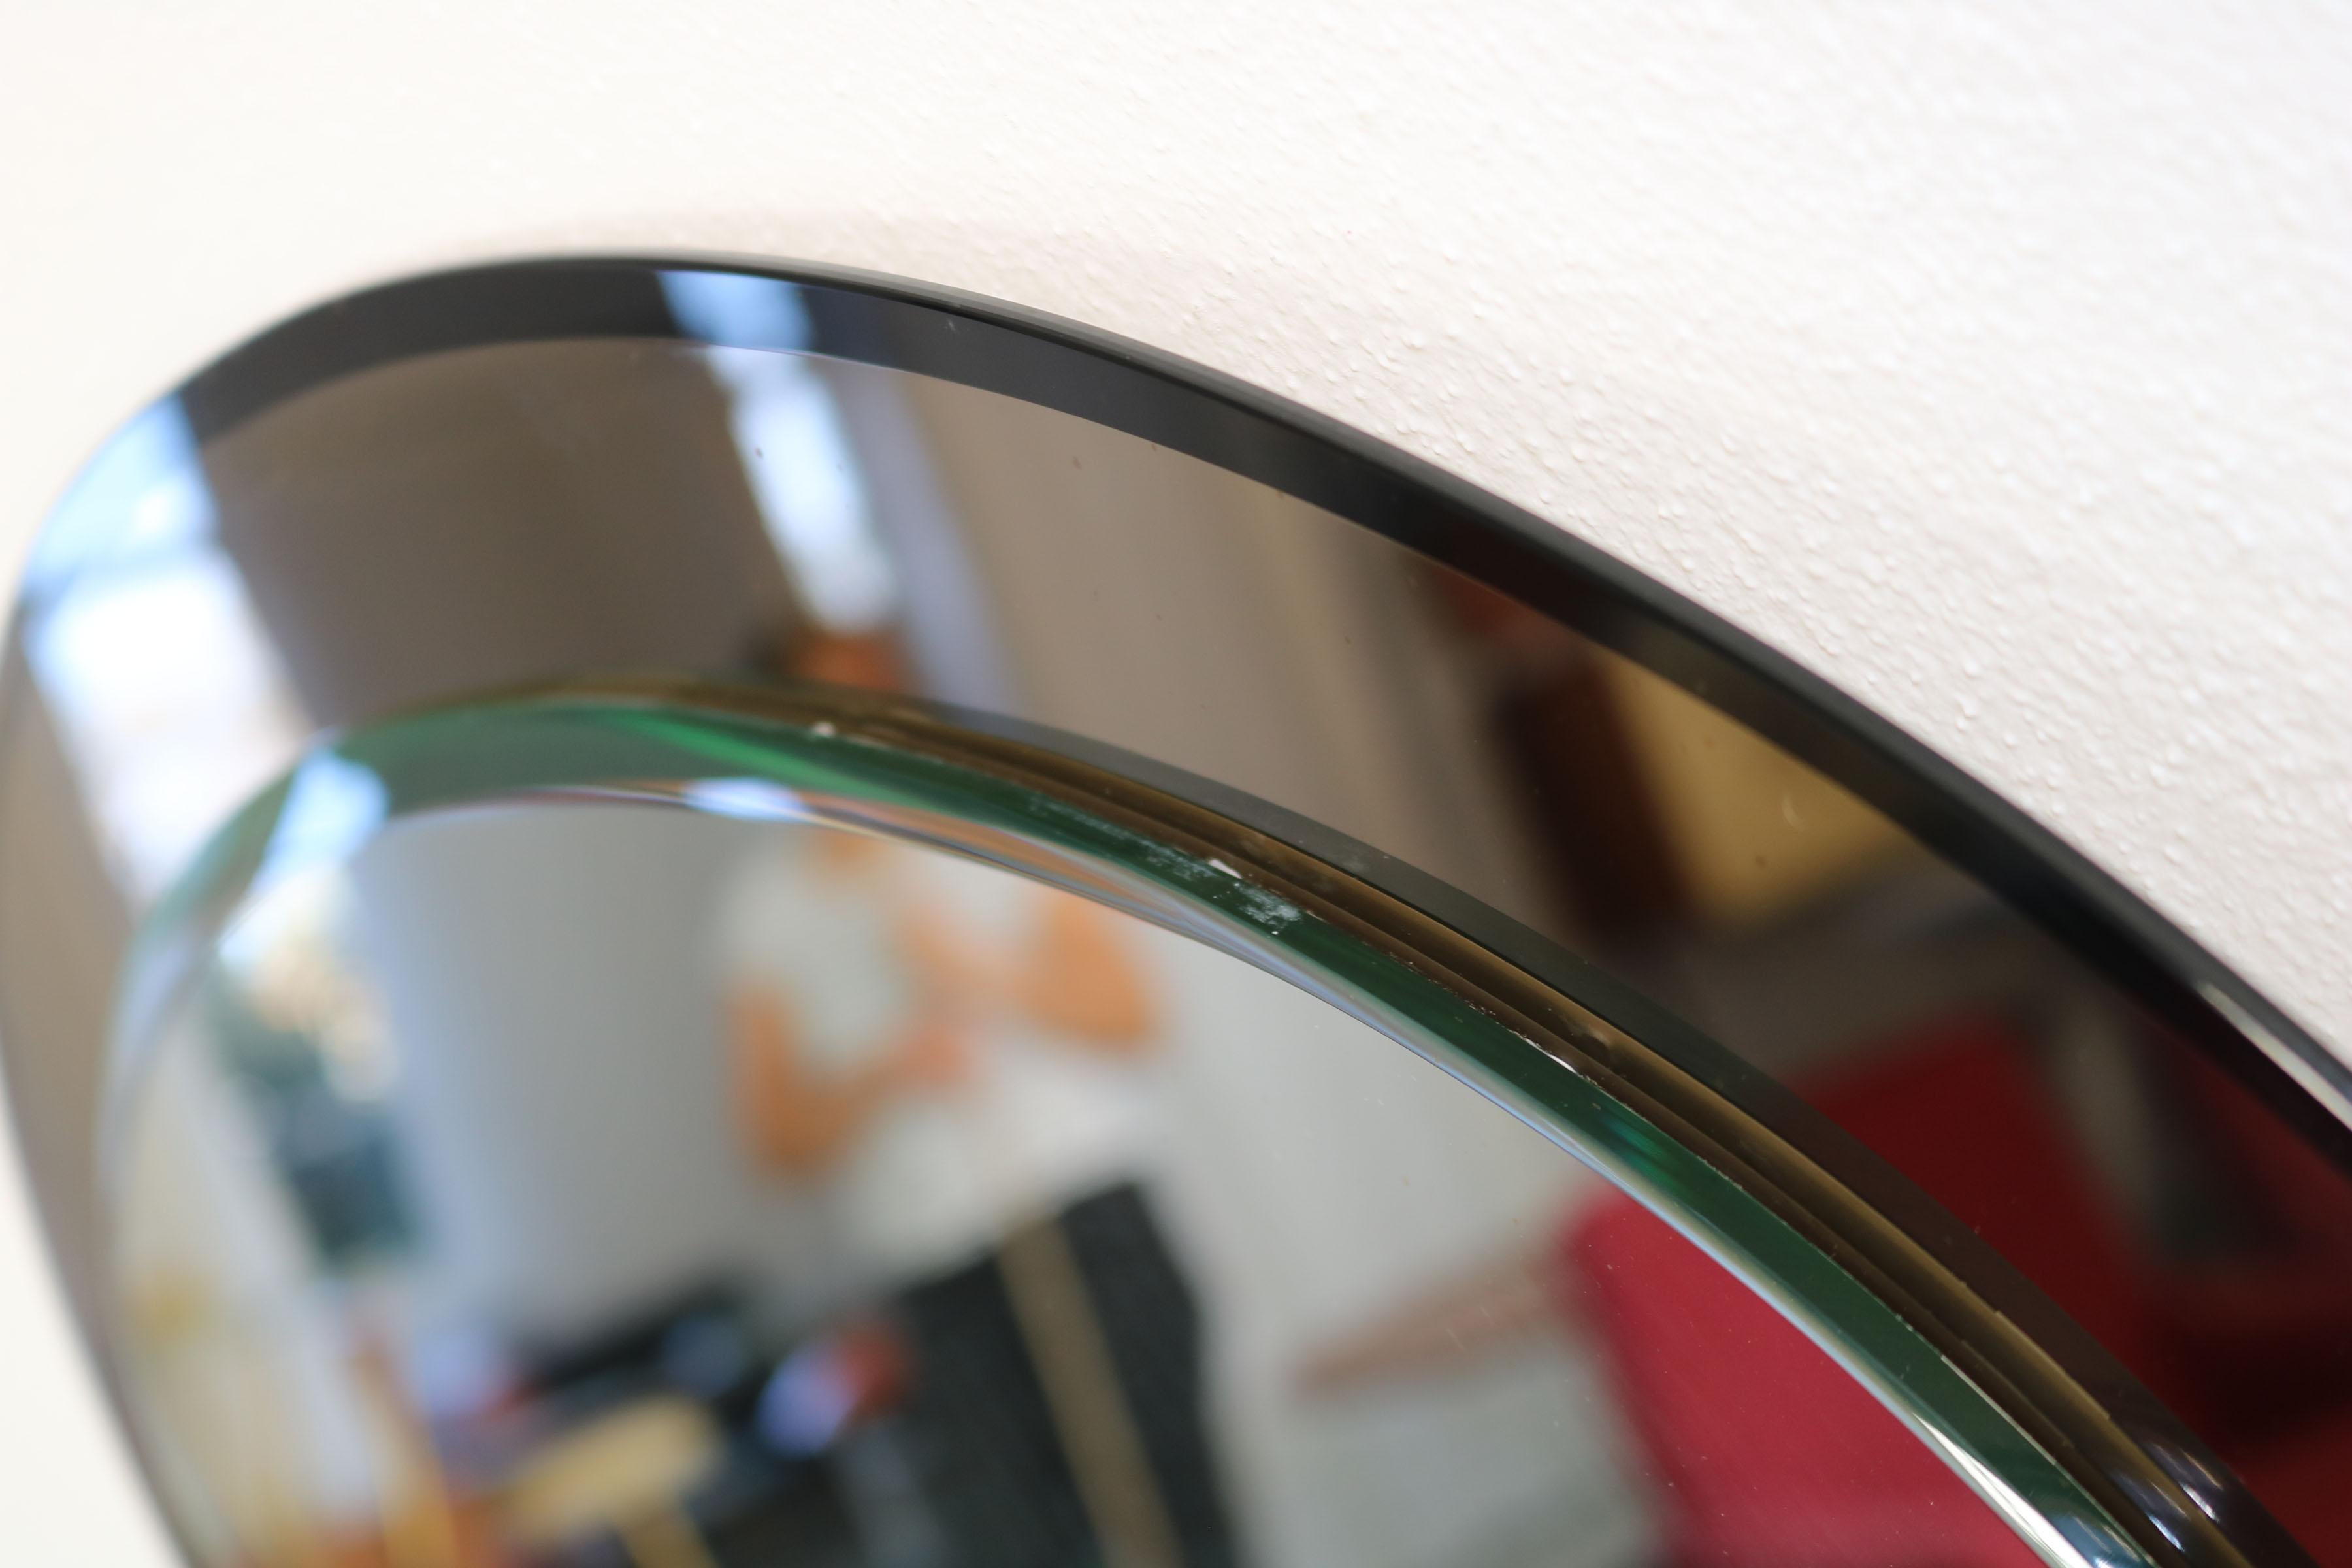 Oval Italian Twotone Mirror, Design: Antonio Lupi by Cristal Luxor, 1960s For Sale 15